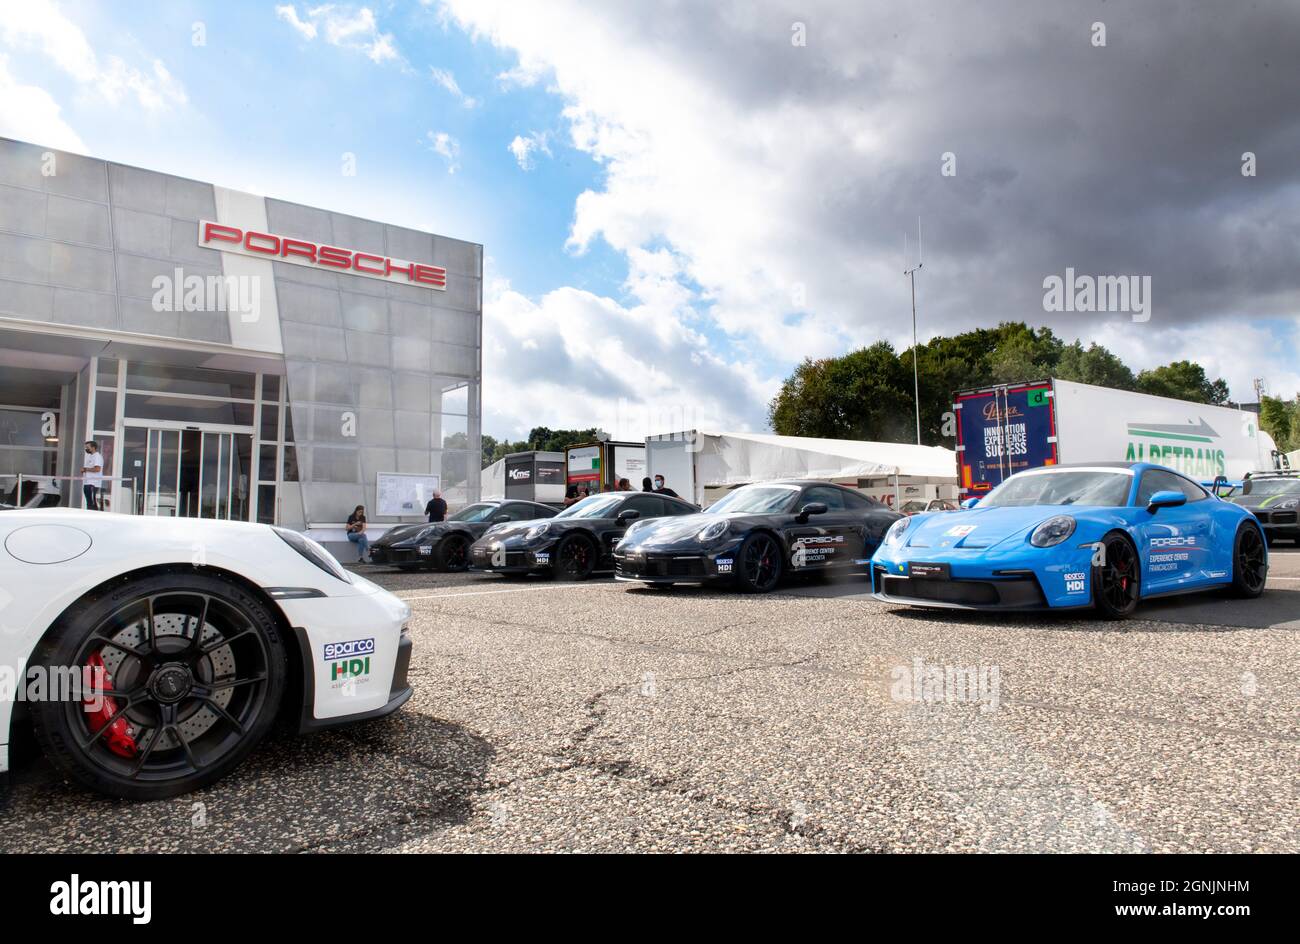 Vallelunga, italie 19 septembre 2021 ACI Racing Weekend. De nombreuses voitures Prosche se trouvent devant le bâtiment de la salle d'exposition Banque D'Images